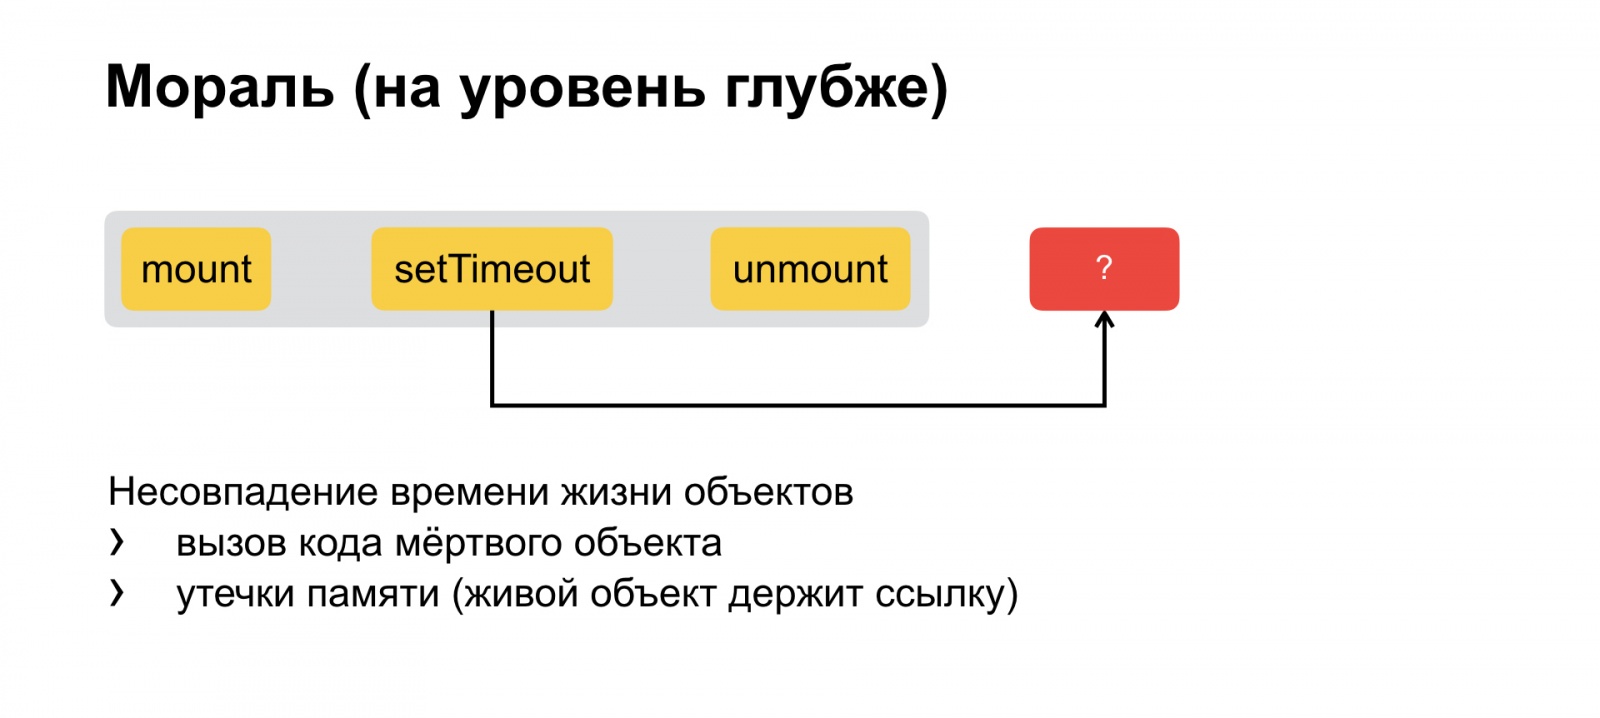 Тяжёлое бремя времени. Доклад Яндекса о типичных ошибках в работе со временем - 19